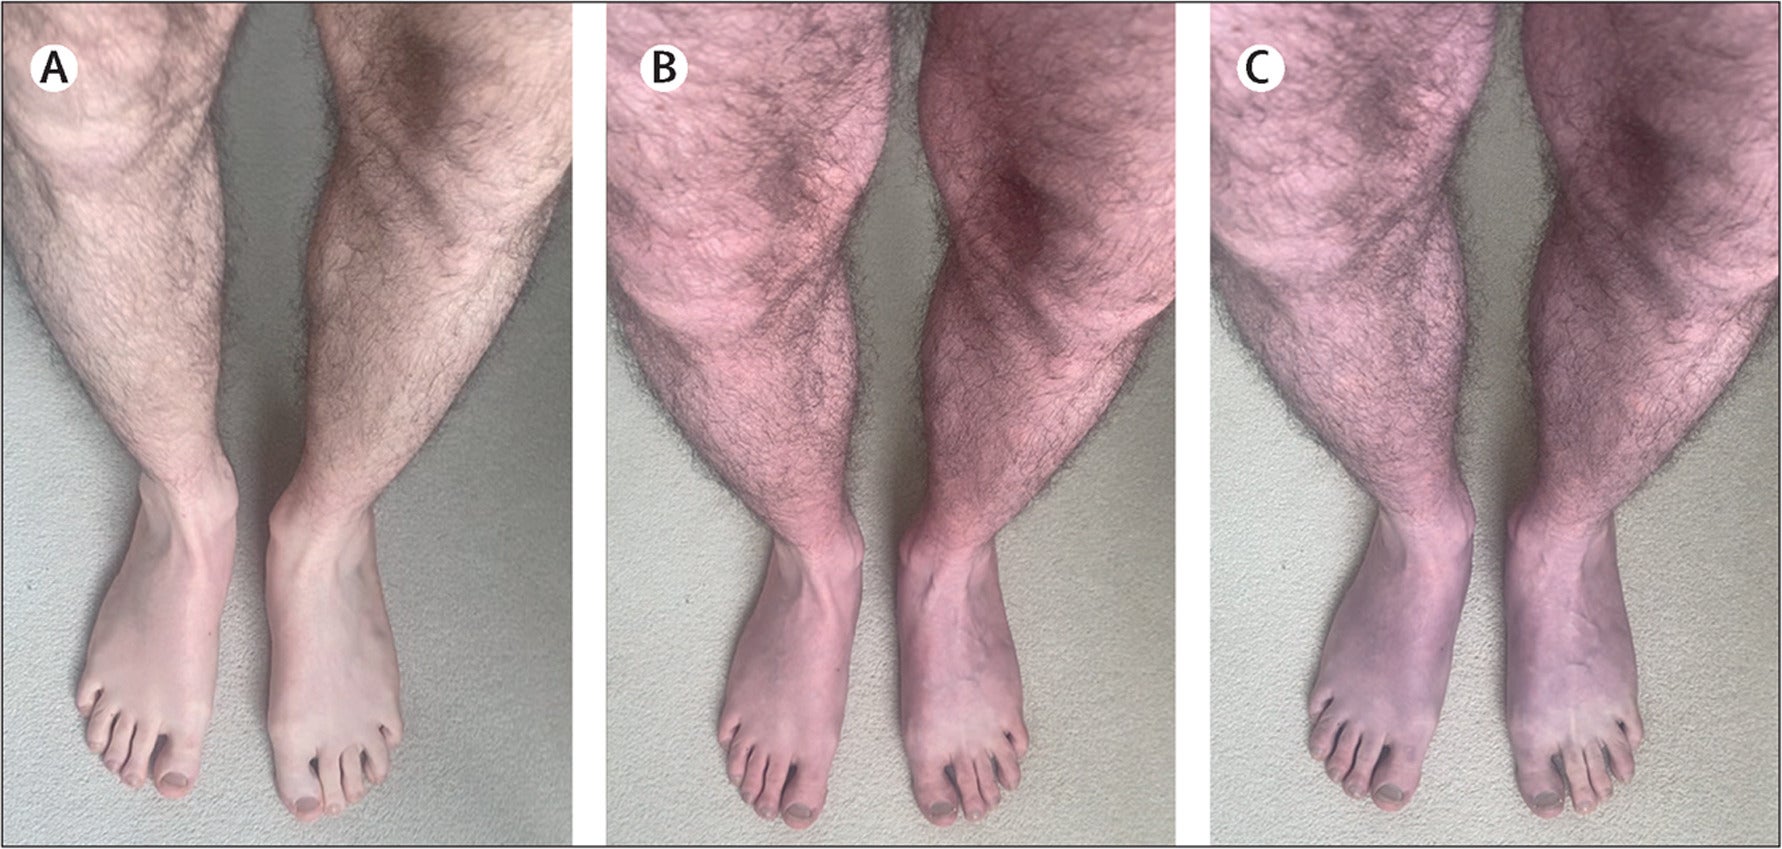 El paciente, de 33 años, presentó una “rápida decoloración púrpura” en las piernas